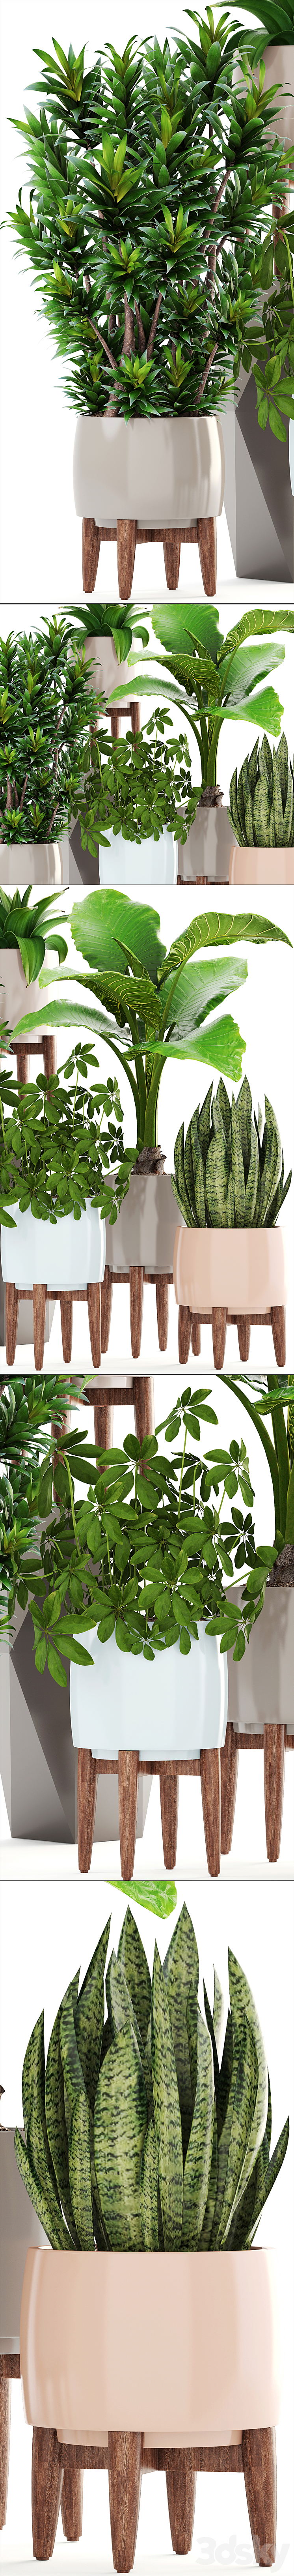 Collection of plants 196. Dracaena bush alocasia flower pot flowerpot interior decorative 3DS Max - thumbnail 2